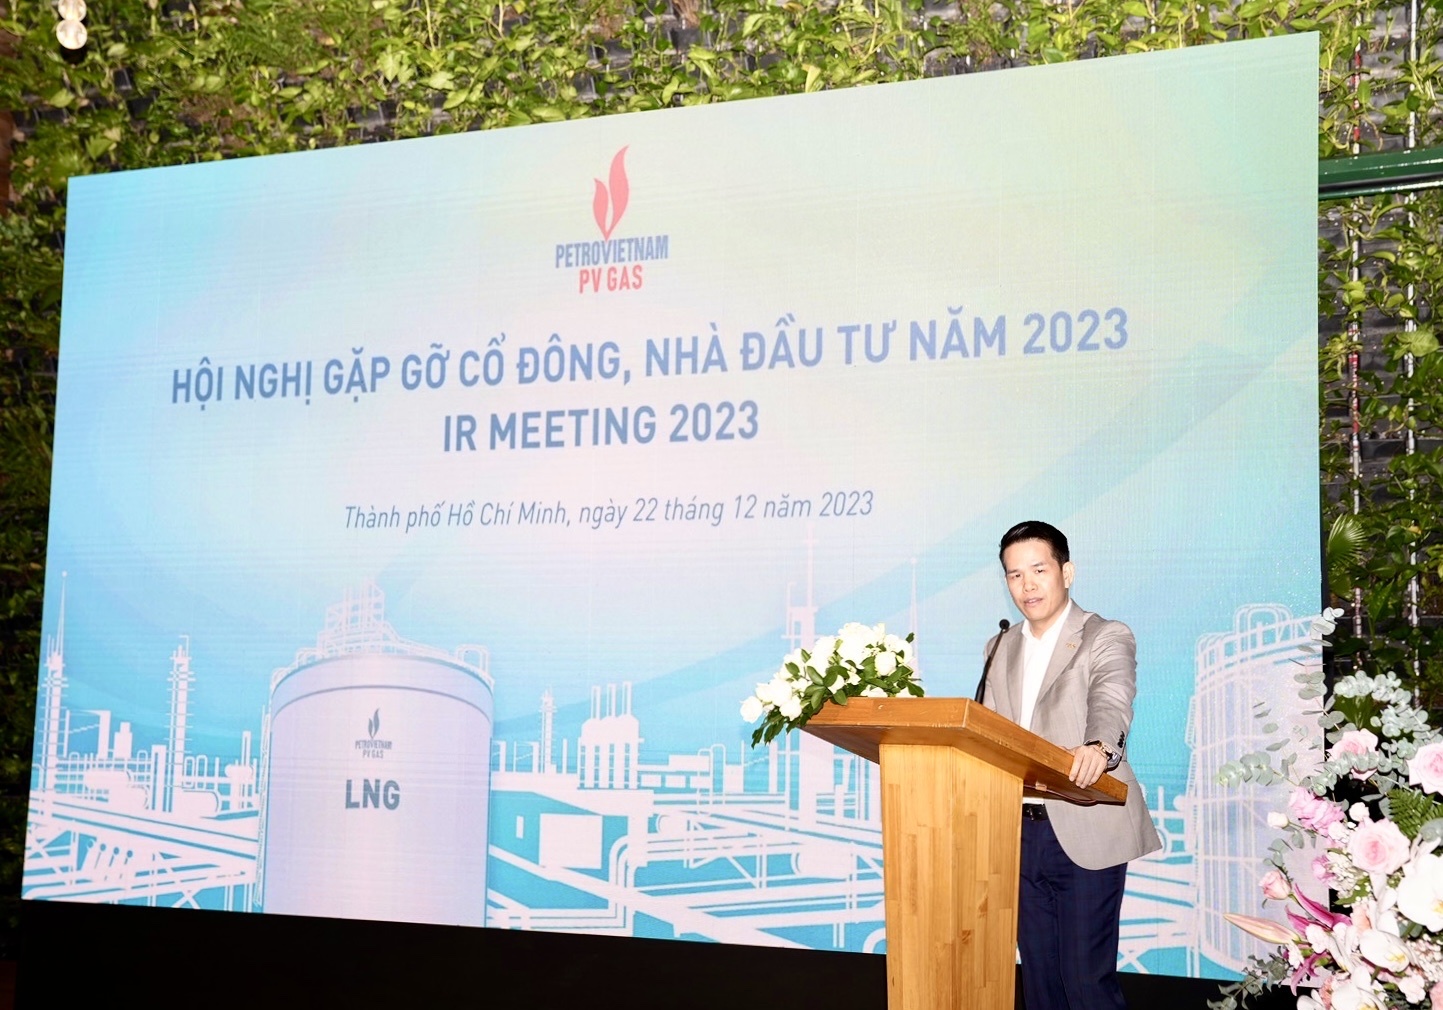 Tổng Giám đốc PV GAS  Phạm Văn Phong phát biểu tại Hội nghị.